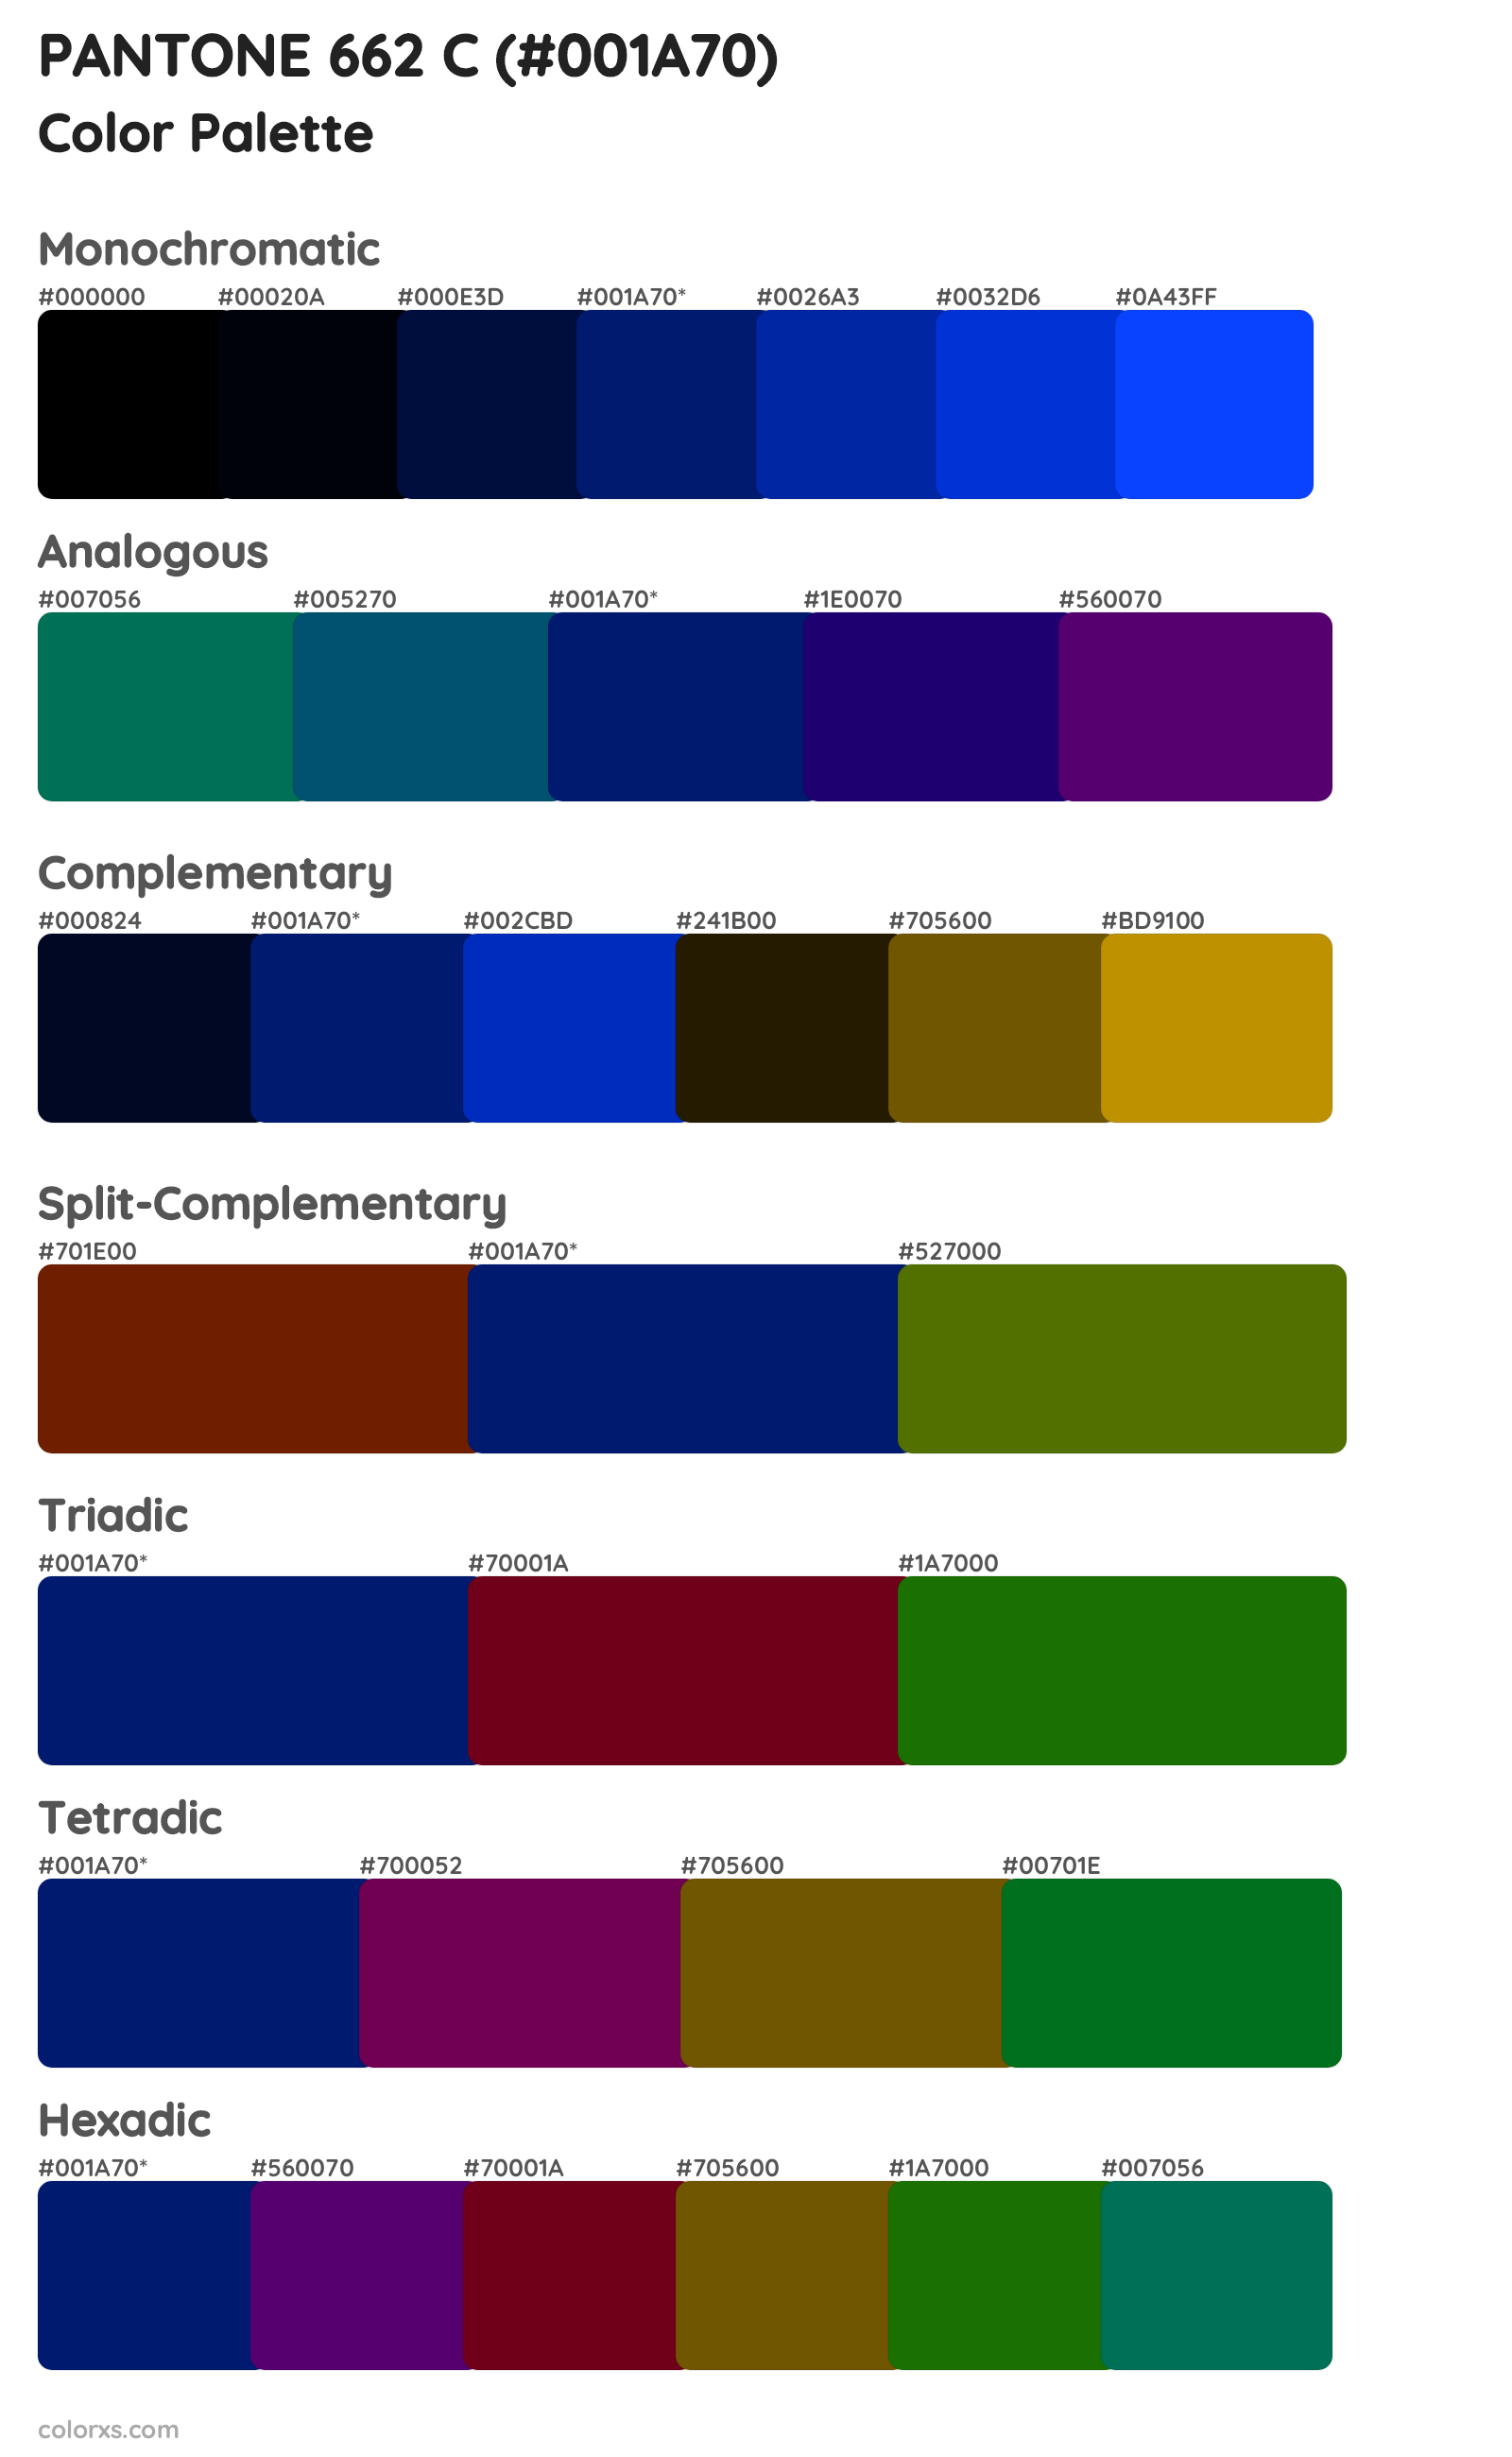 PANTONE 662 C Color Scheme Palettes